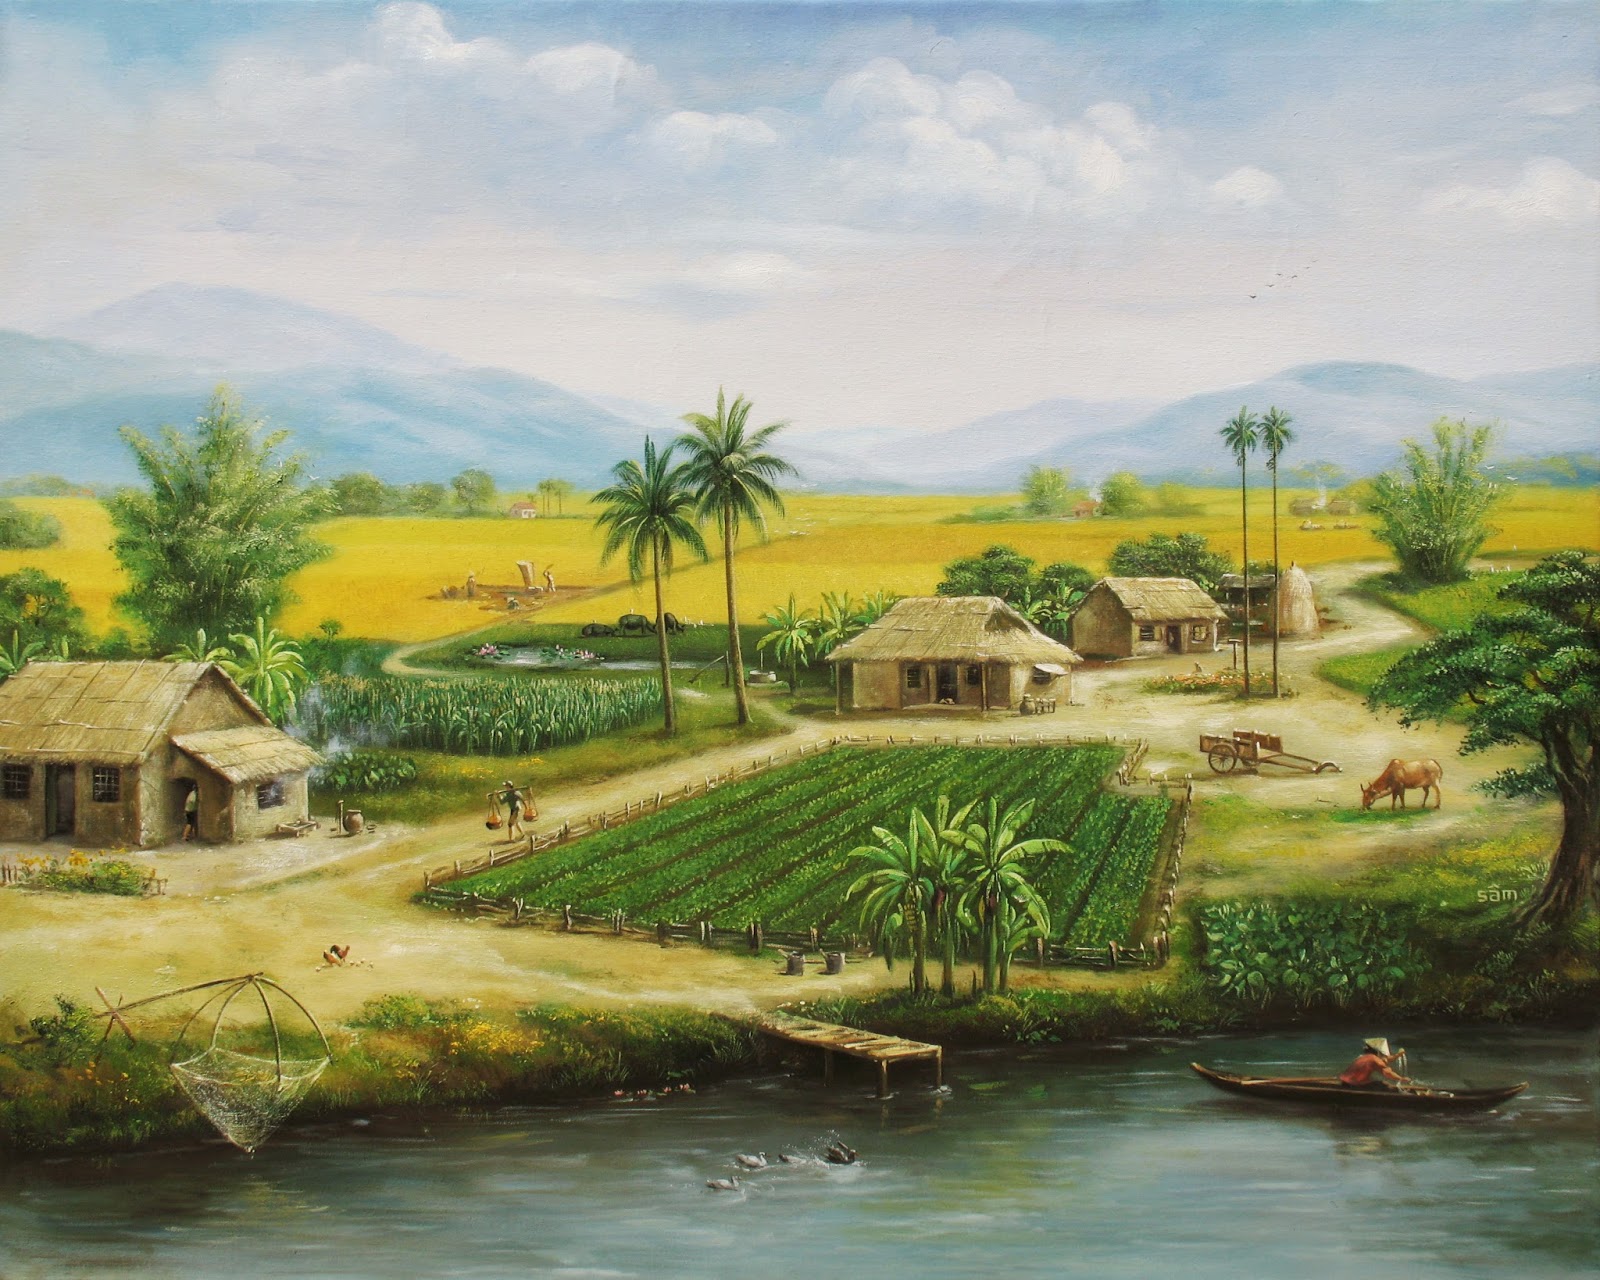 LÊ SÂM . vẽ tranh sơn dầu: tranh đồng quê Việt Nam. sơn dầu Lê Sâm